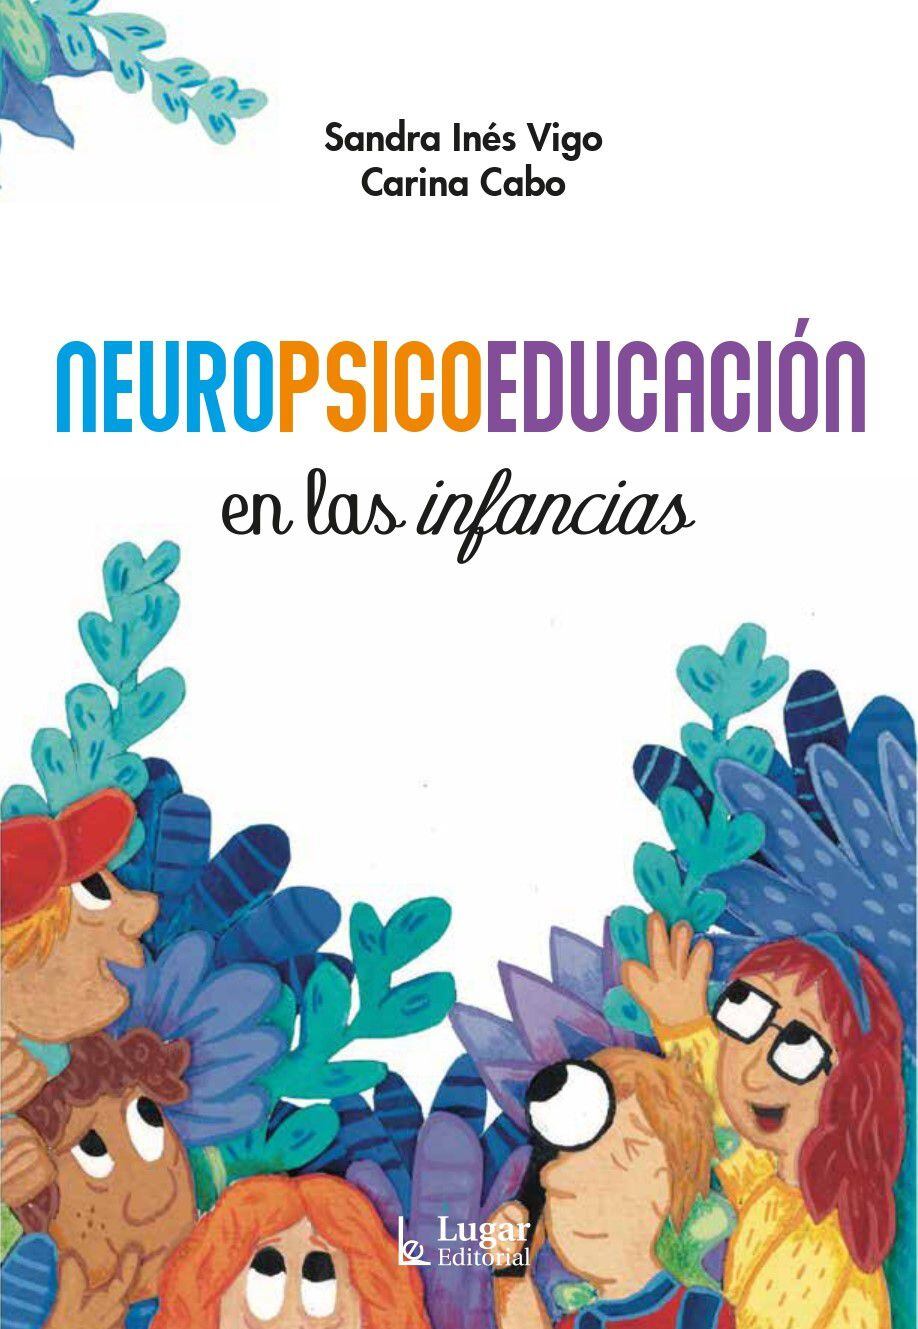 Carina Cabo y Sandra Vigo: Neuropsicoeducación en las infancias